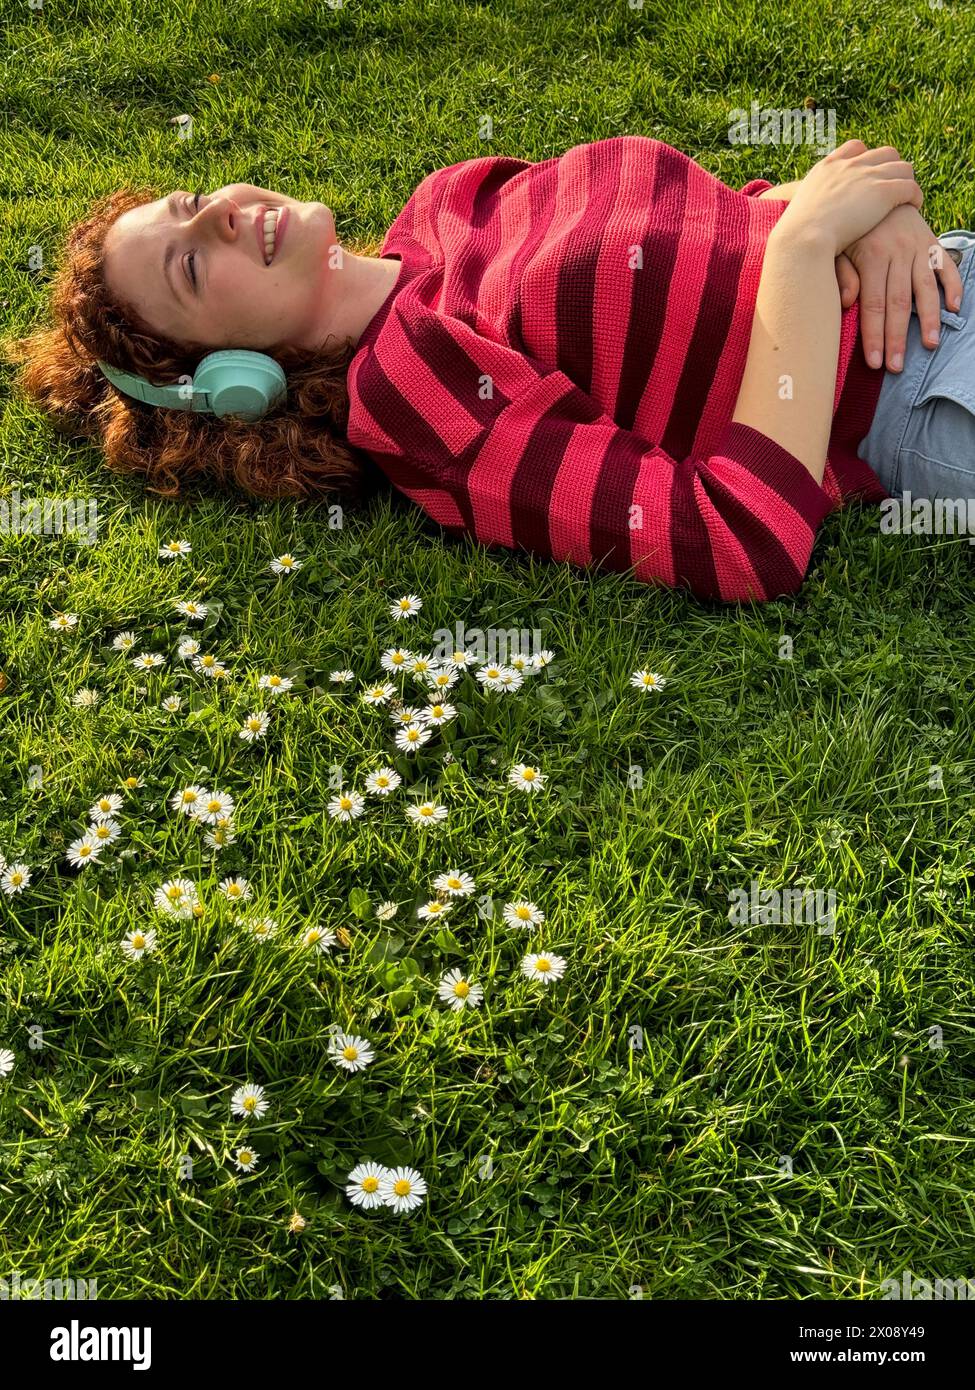 Una giovane donna rossa gioiosa giace su un campo erboso con margherite, indossando le cuffie e godendosi la calda luce del sole Foto Stock